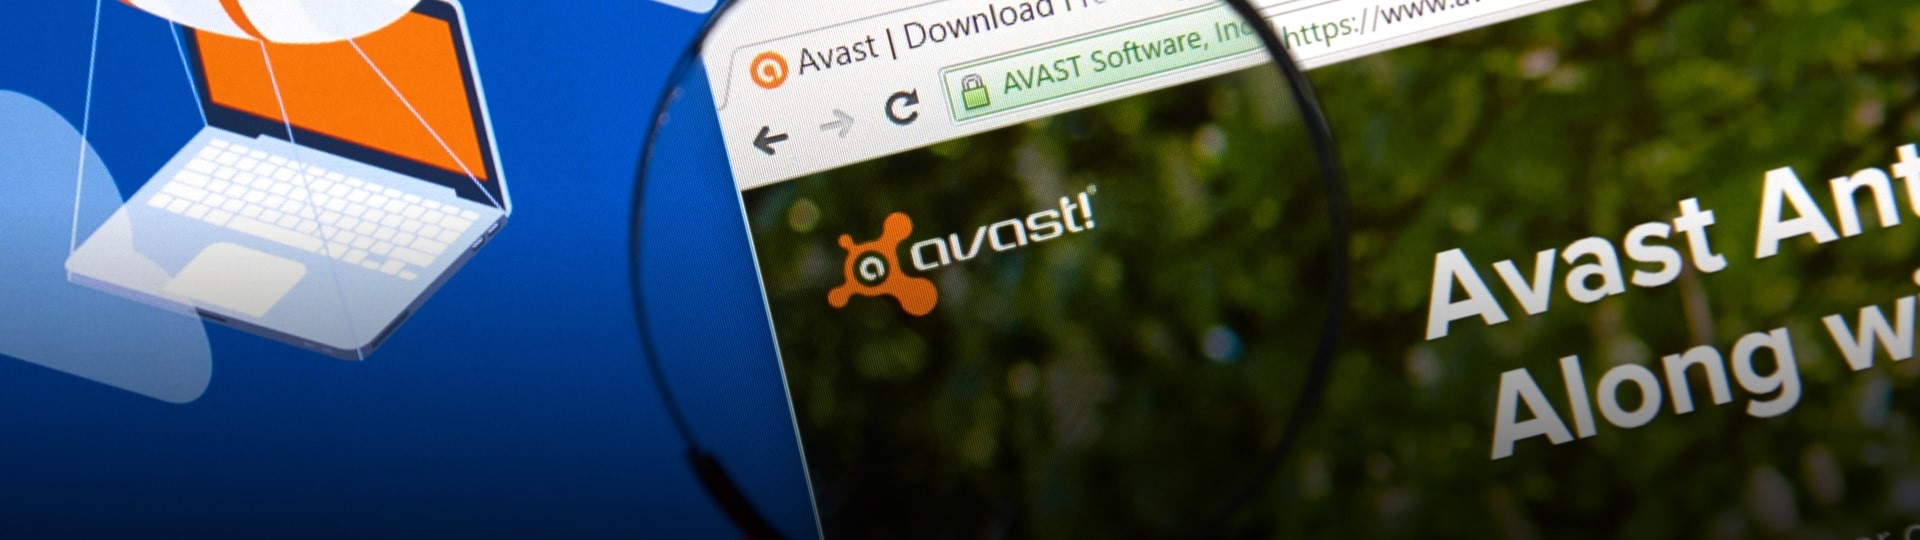 Akcie Avastu výrazně rostou v reakci na rozhovory o převzetí podniku